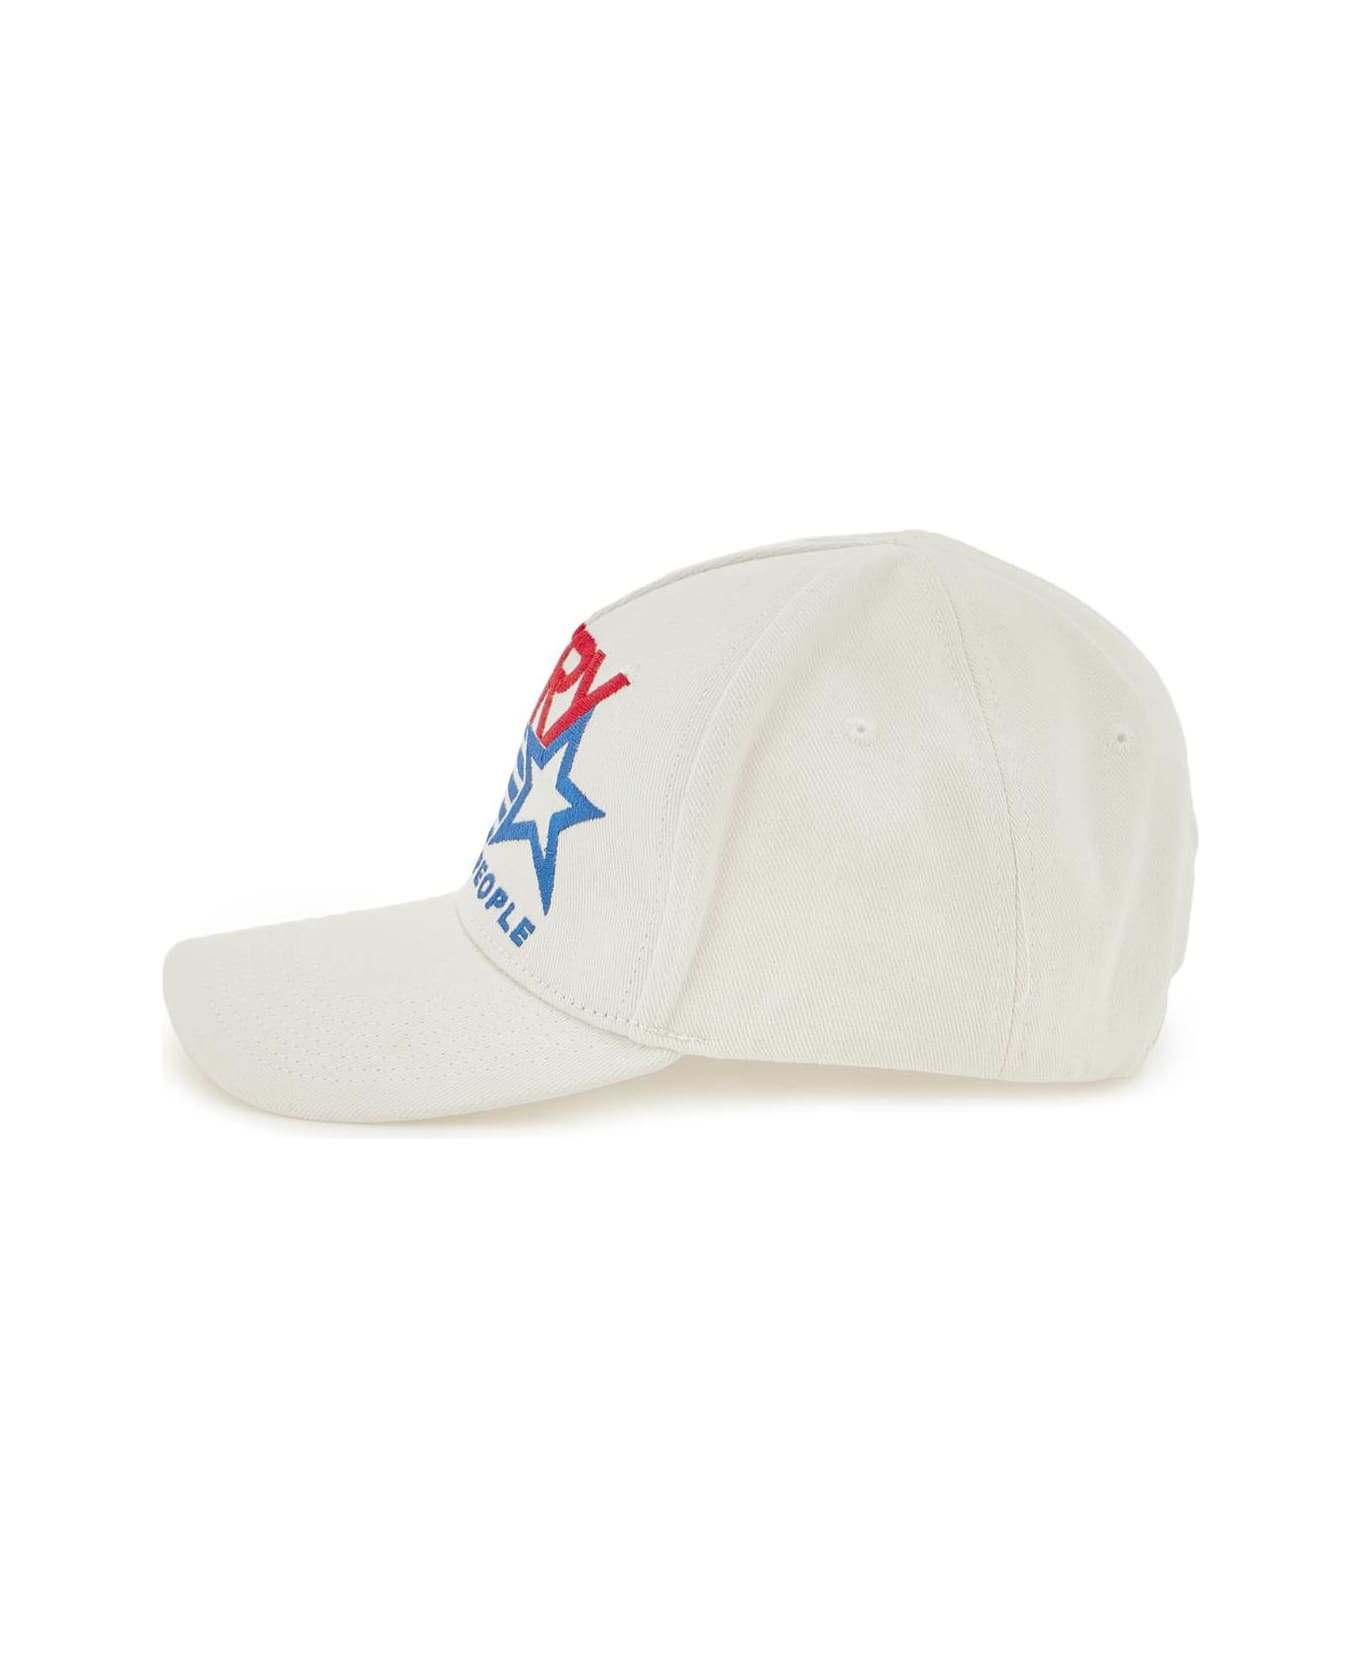 Autry Baseball Cap - White